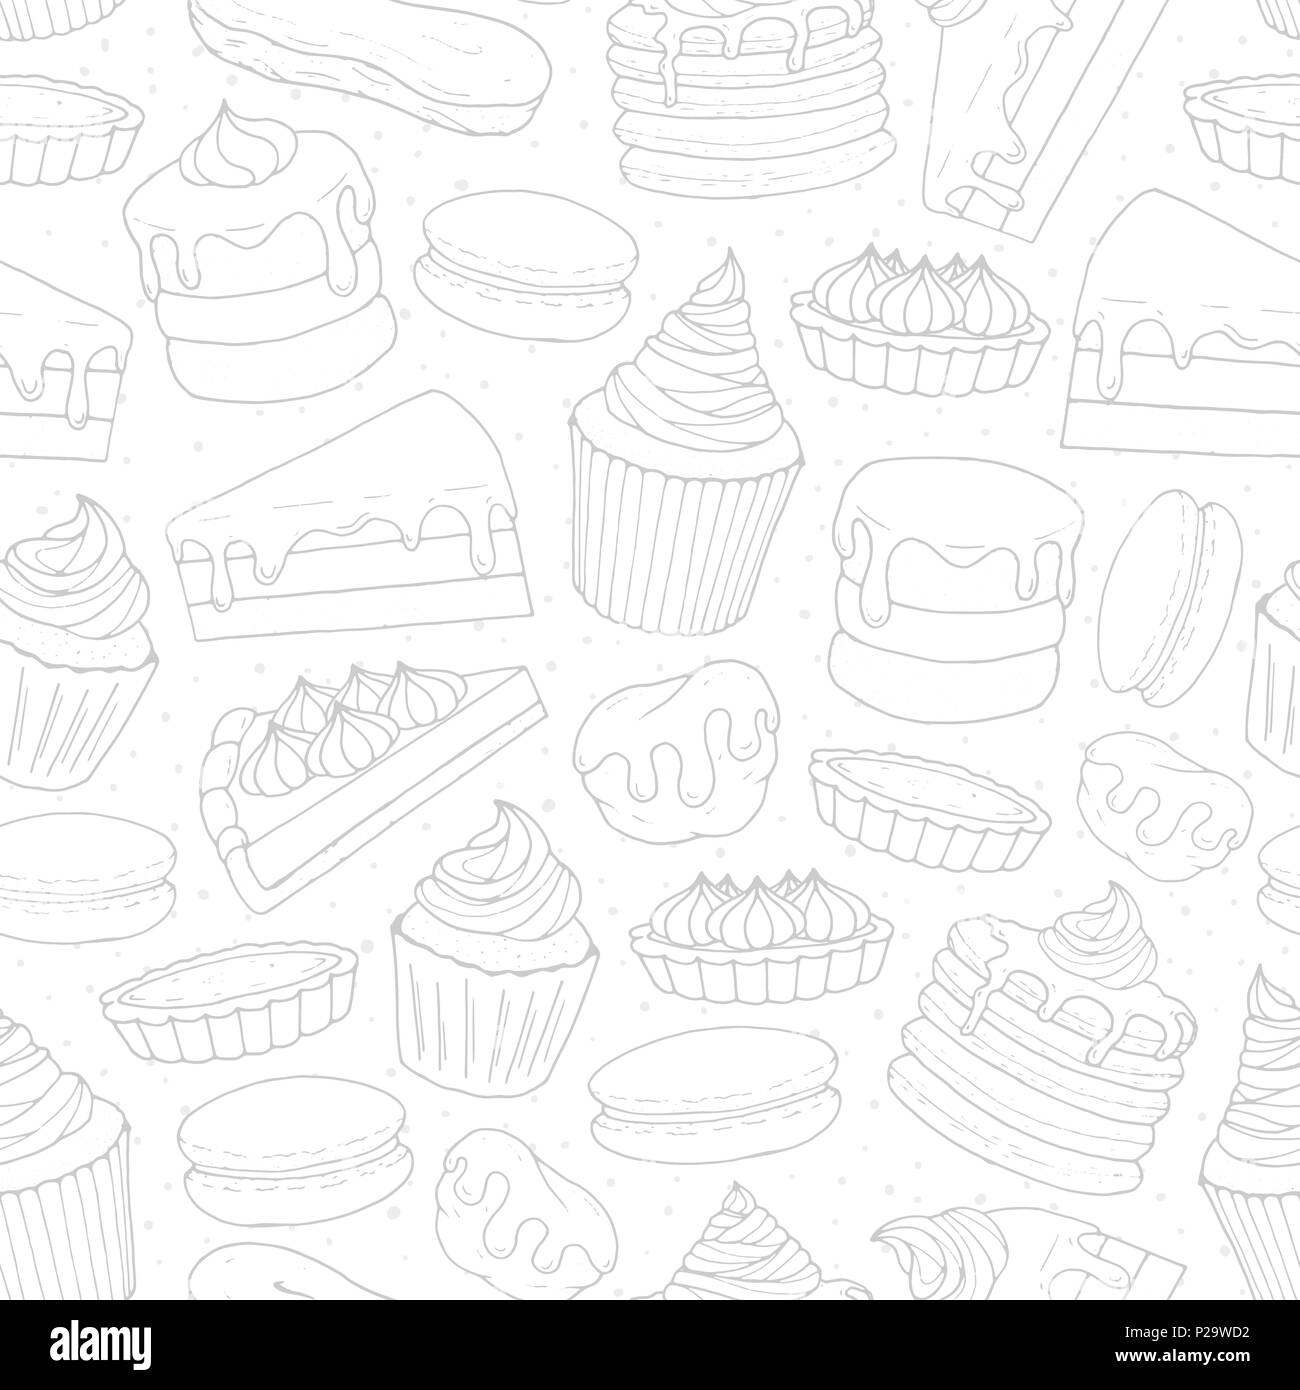 Pâtisserie Vecteur de répétition avec des gâteaux, tartes, muffins, crêpes, macarons et contours éclairs sur le fond en pointillé. Hand drawn sweet bakery à sk Illustration de Vecteur